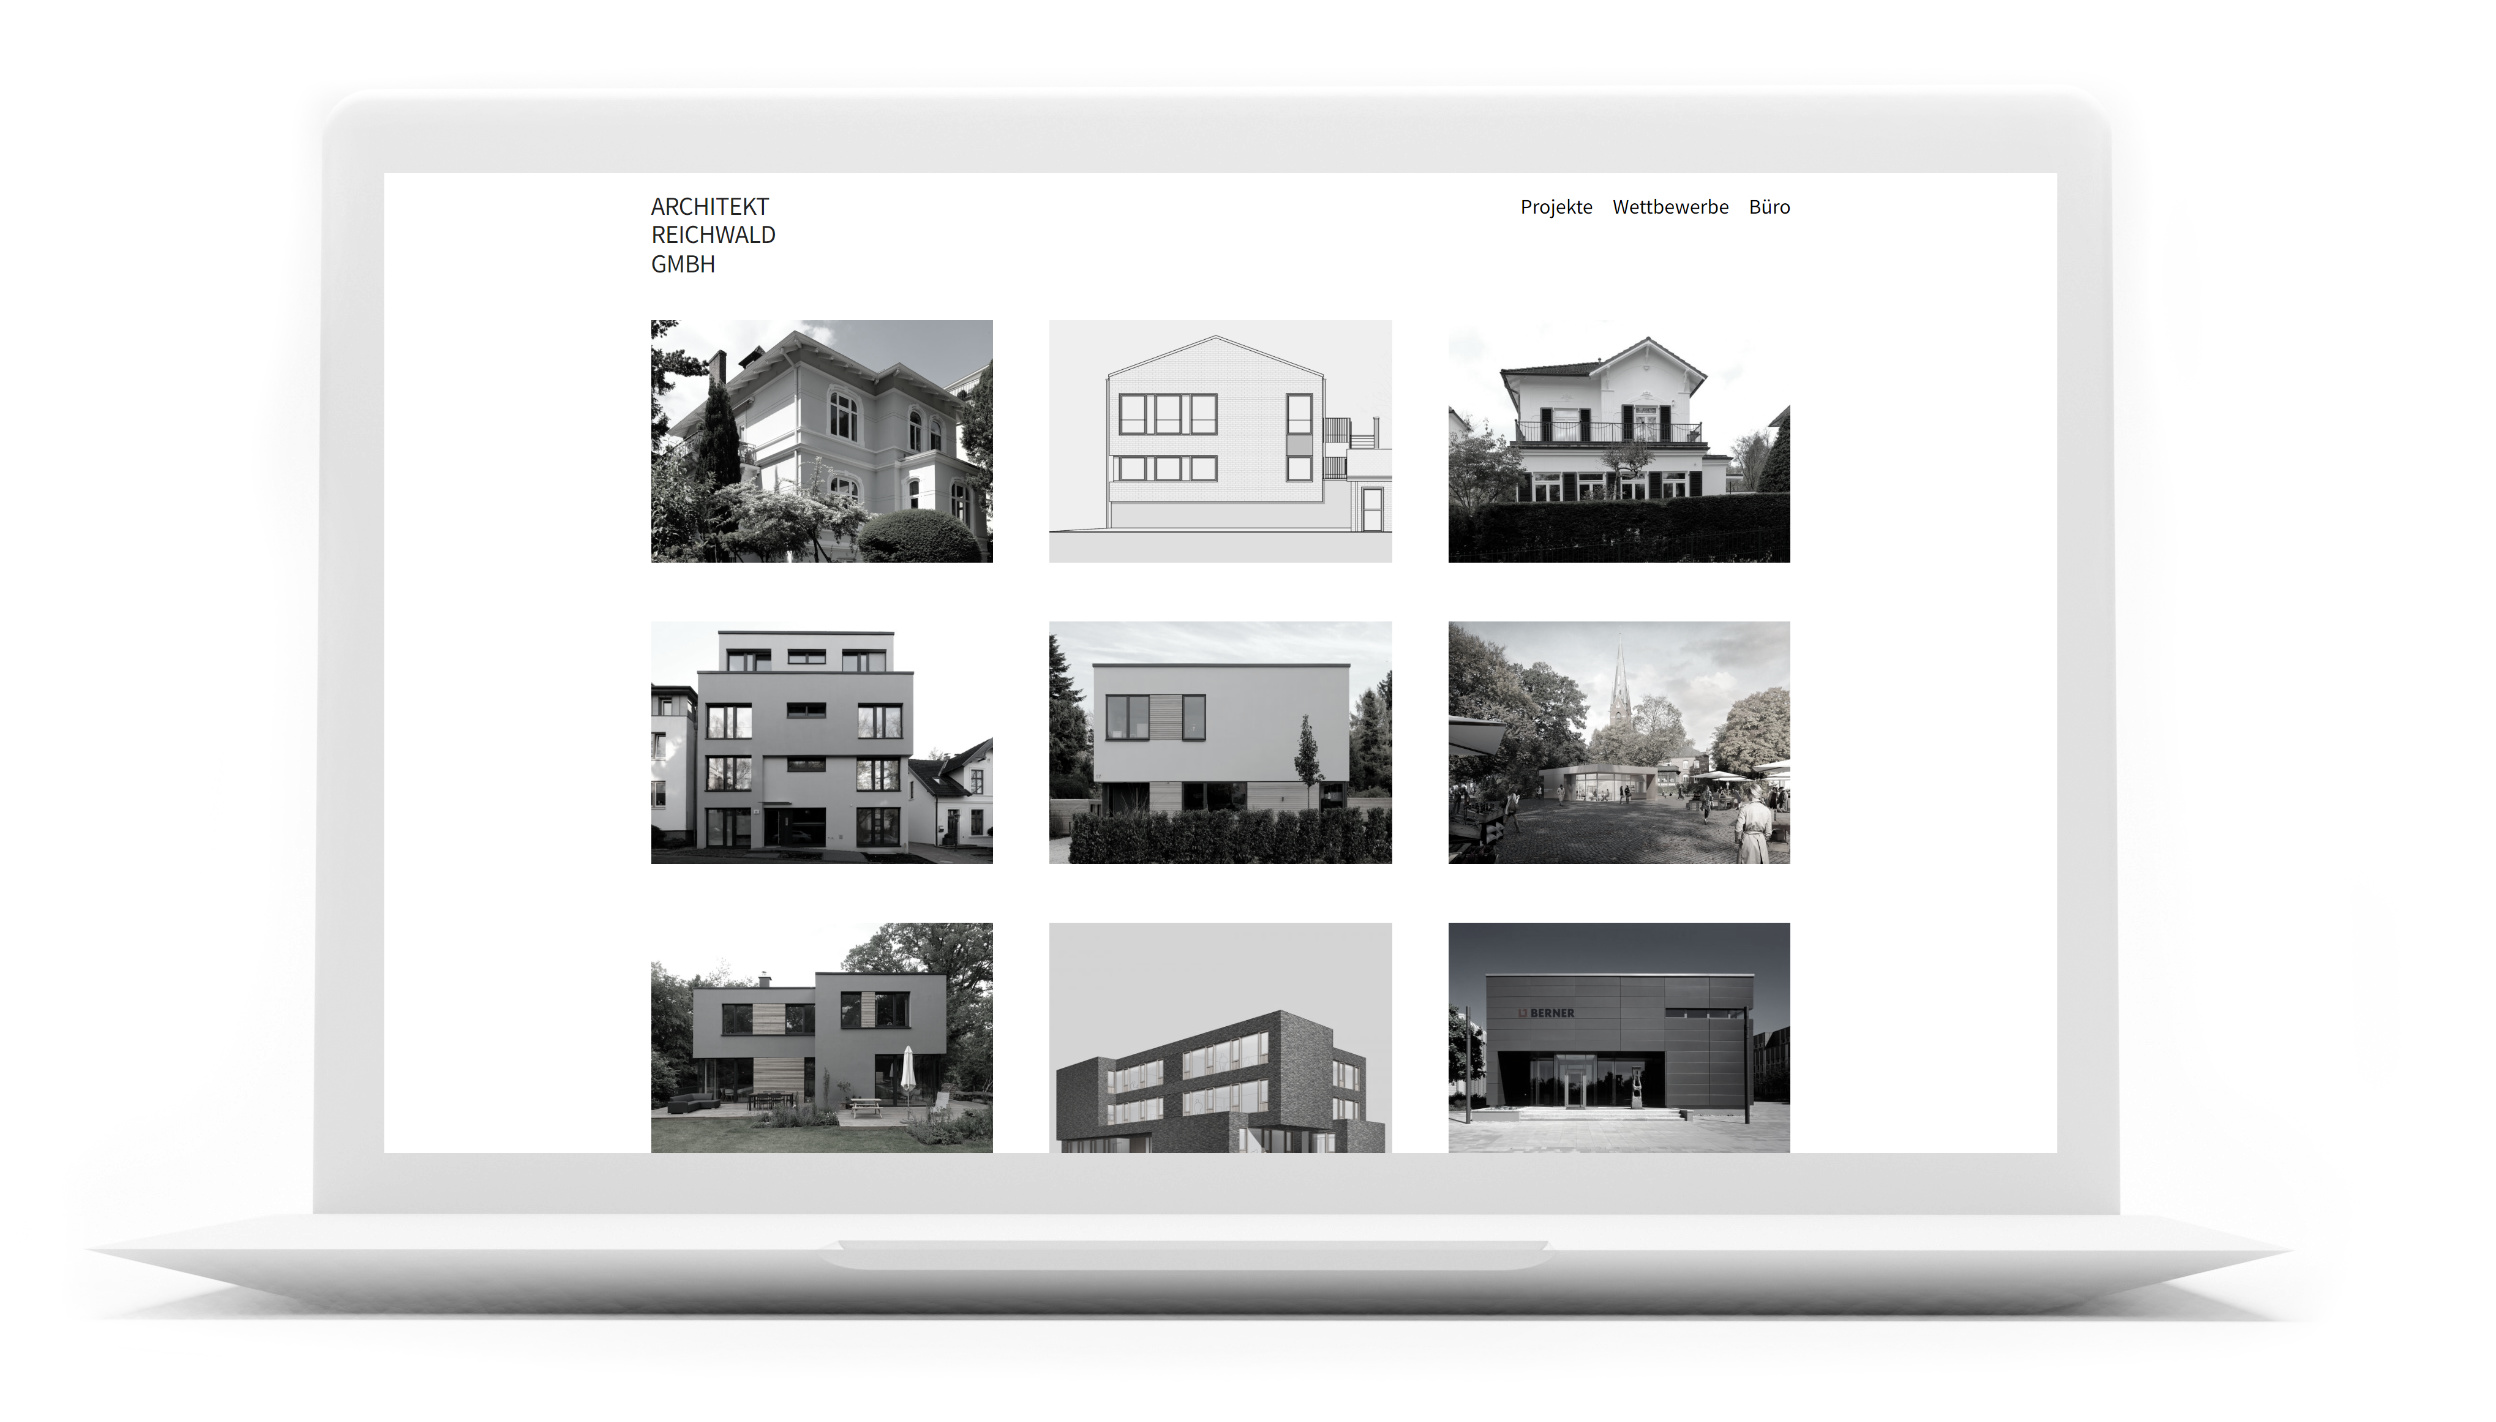 Architektenwebsite Leif Reichwald auf Mac